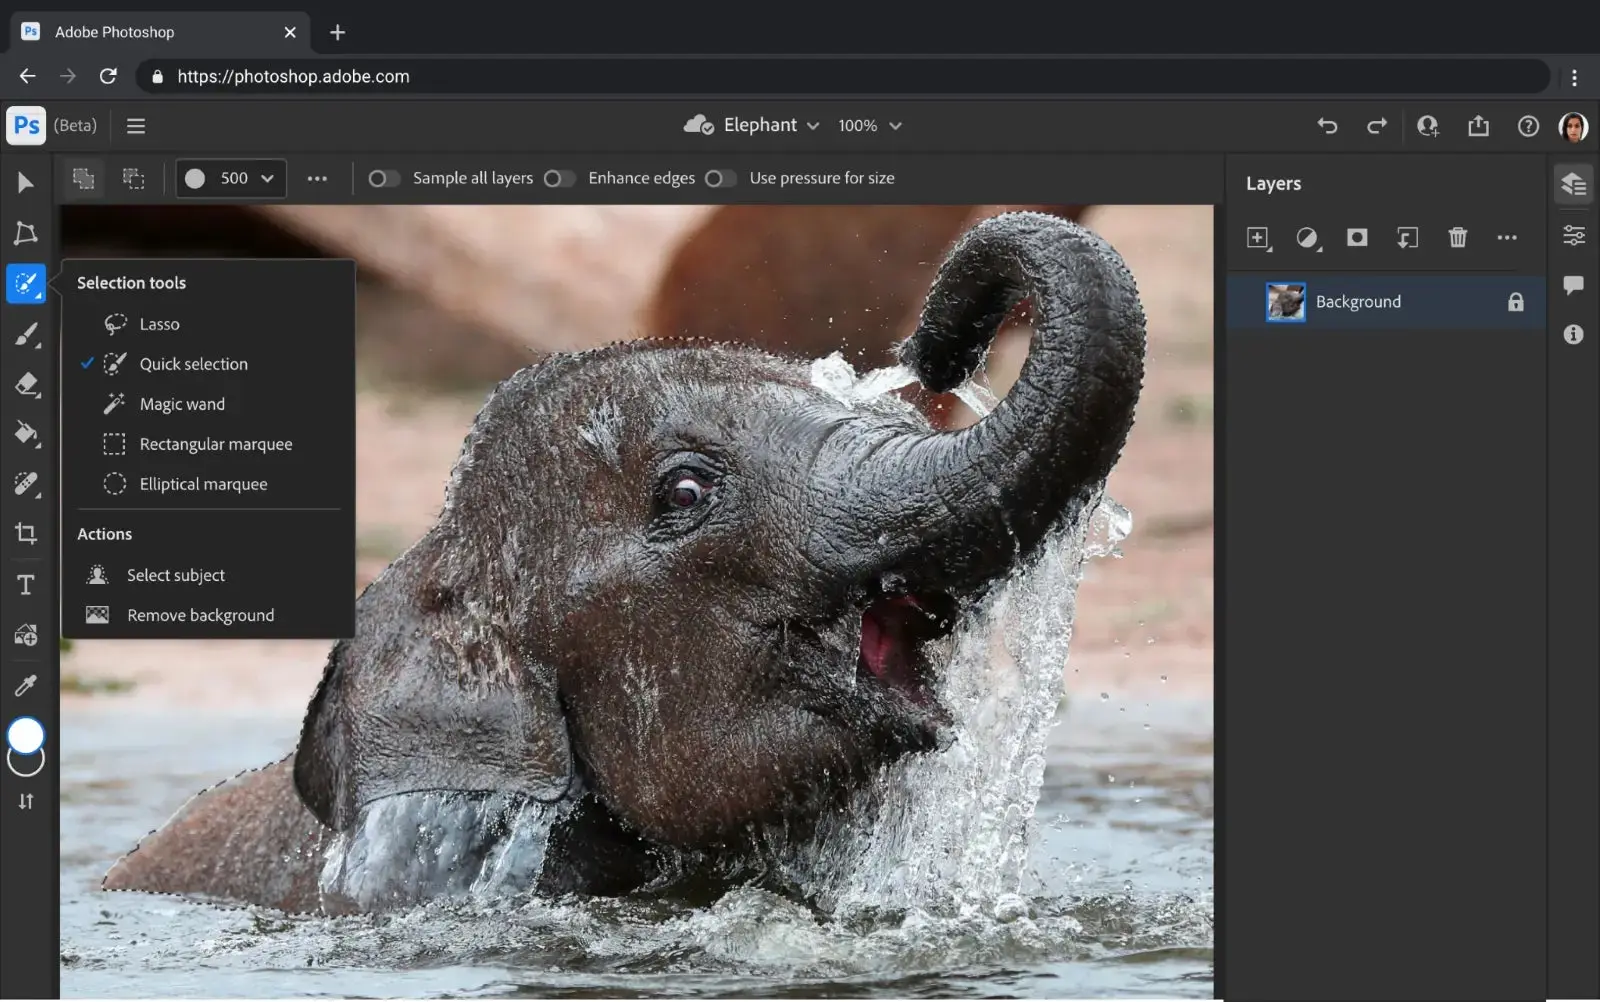 Interface web do Photoshop com a foto de um pequeno elefante que está na água